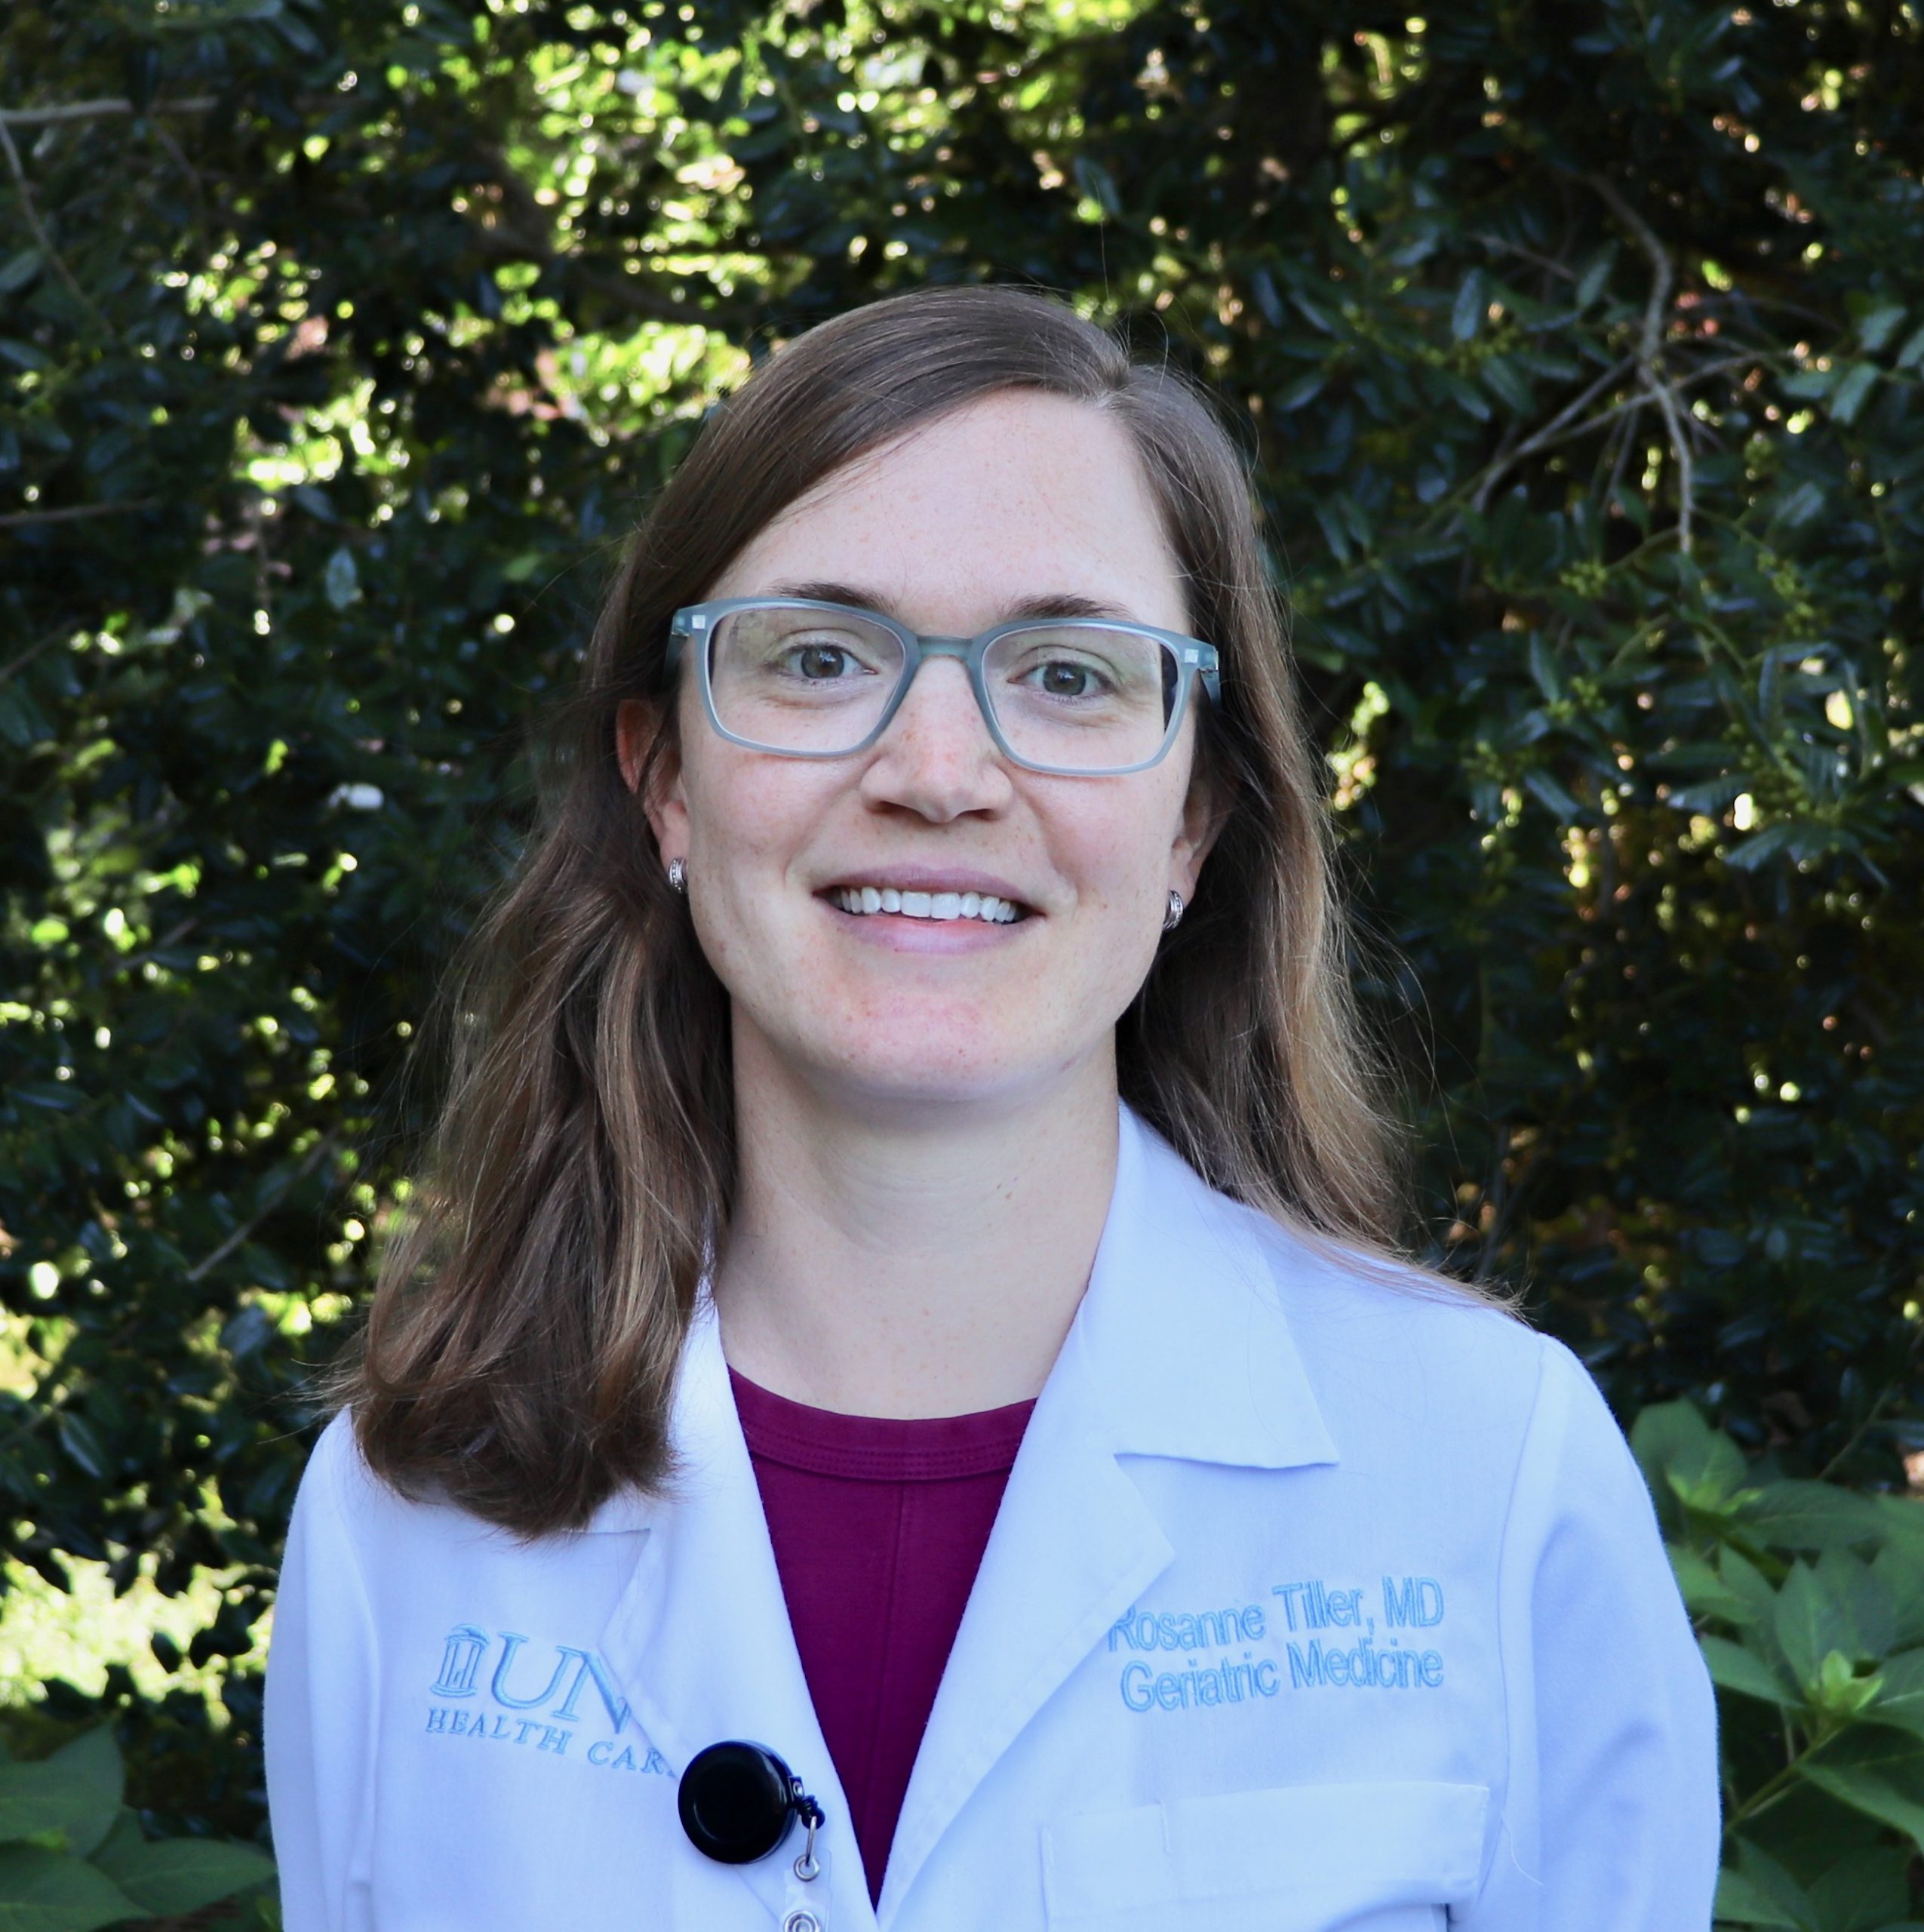 Rosanne Tiller, MD, Division of Geriatric Medicine